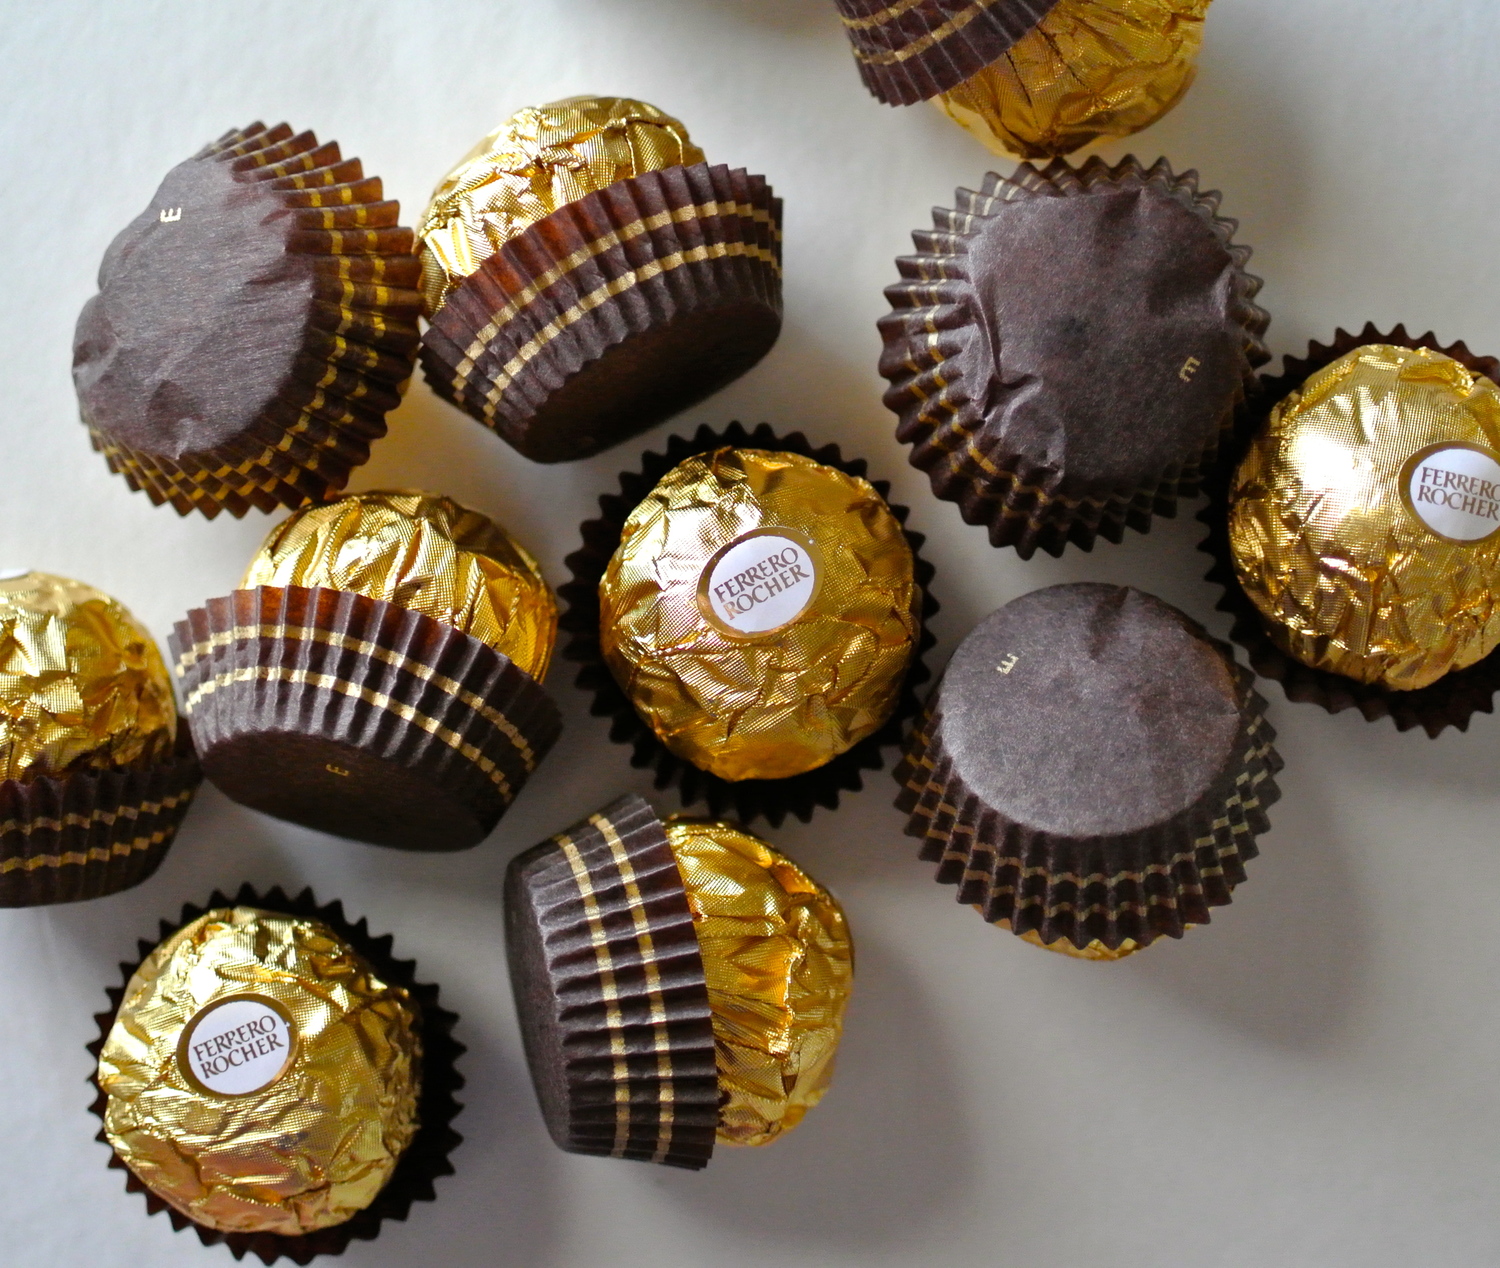  Ferrero si mangia la cioccolata Fannie May